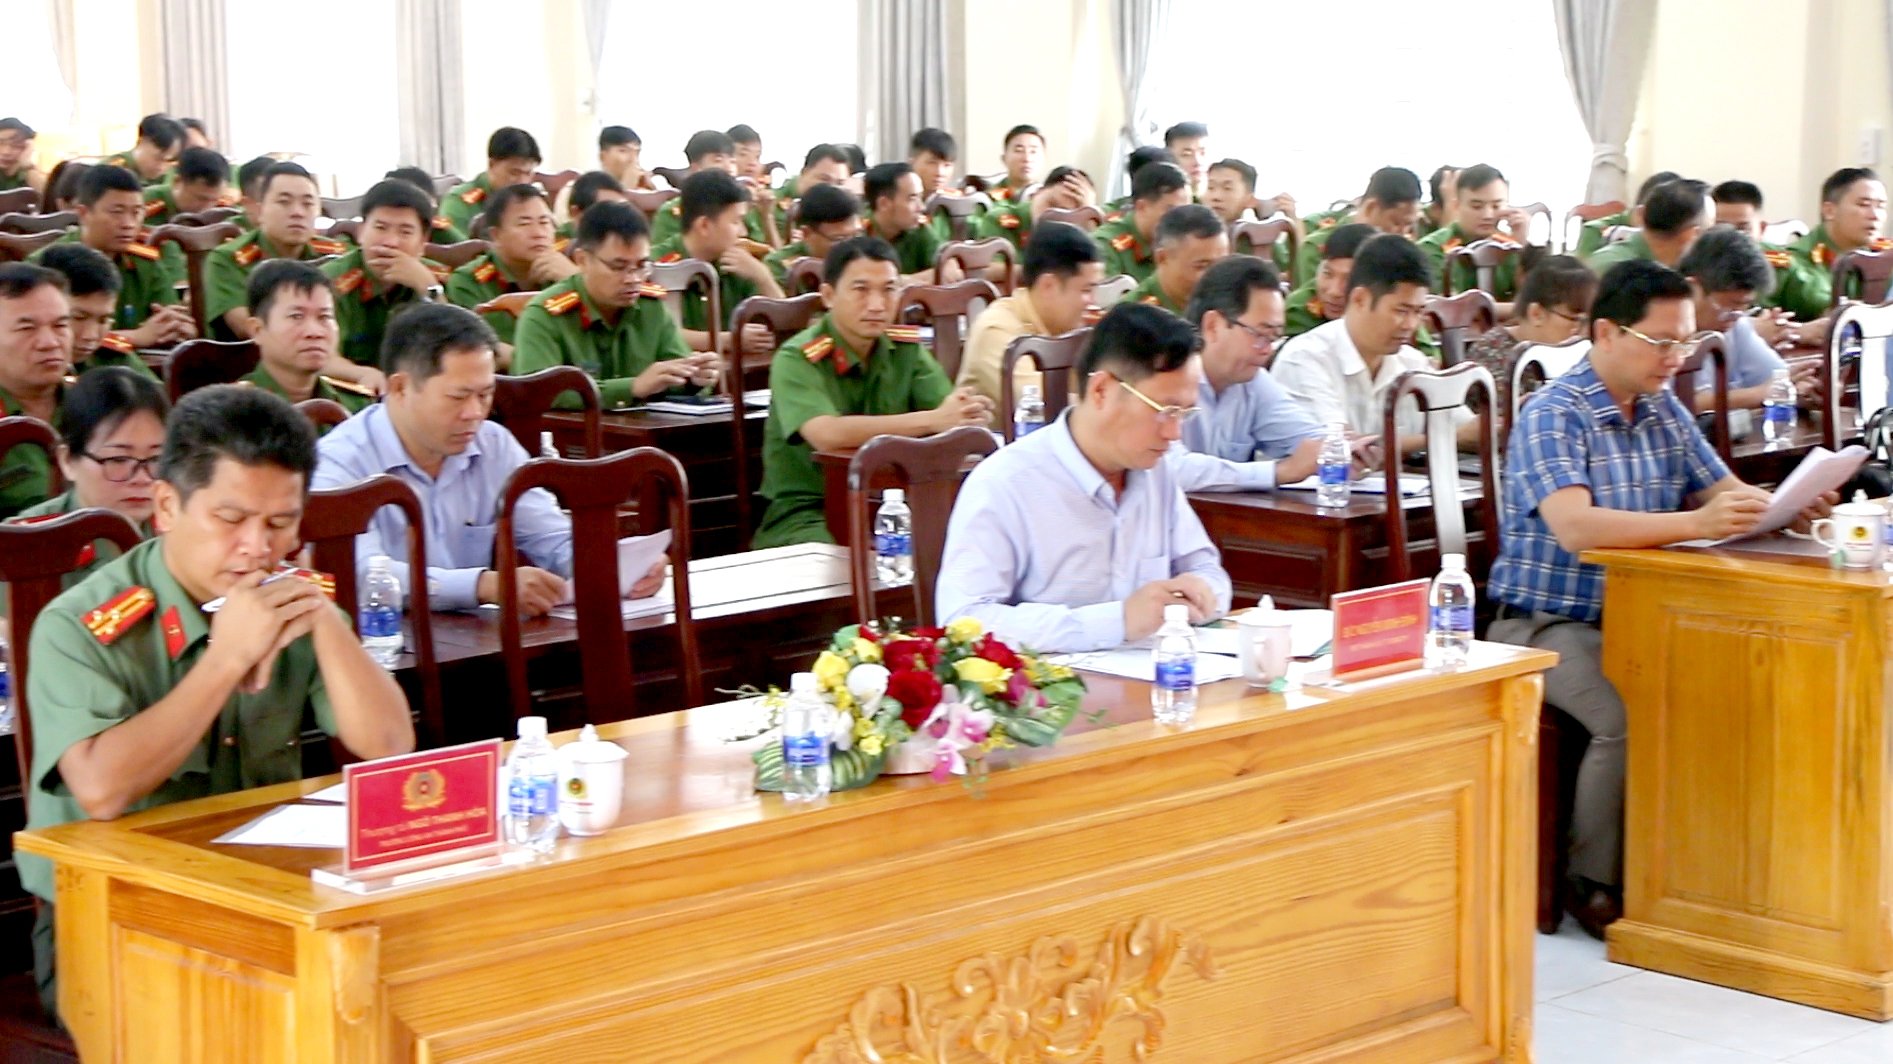 Bắc Giang: Đạt nhiều kết quả trong công tác hỗ trợ nạn nhân bị mua bán trở về